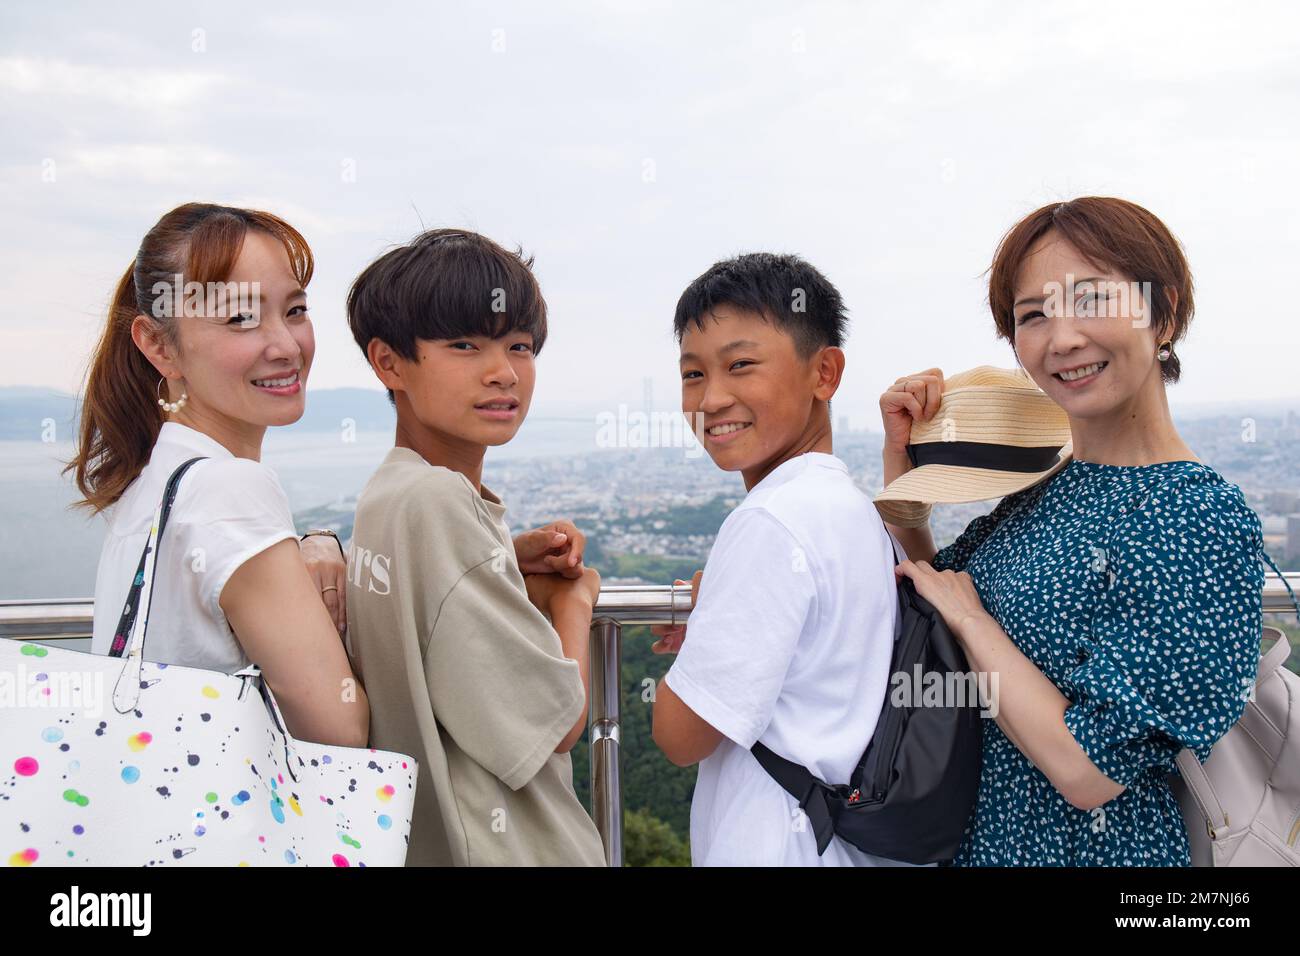 Quattro giapponesi in un'escursione, due donne mature e due ragazzi di 13 anni, in fila, su una piattaforma di osservazione. Foto Stock